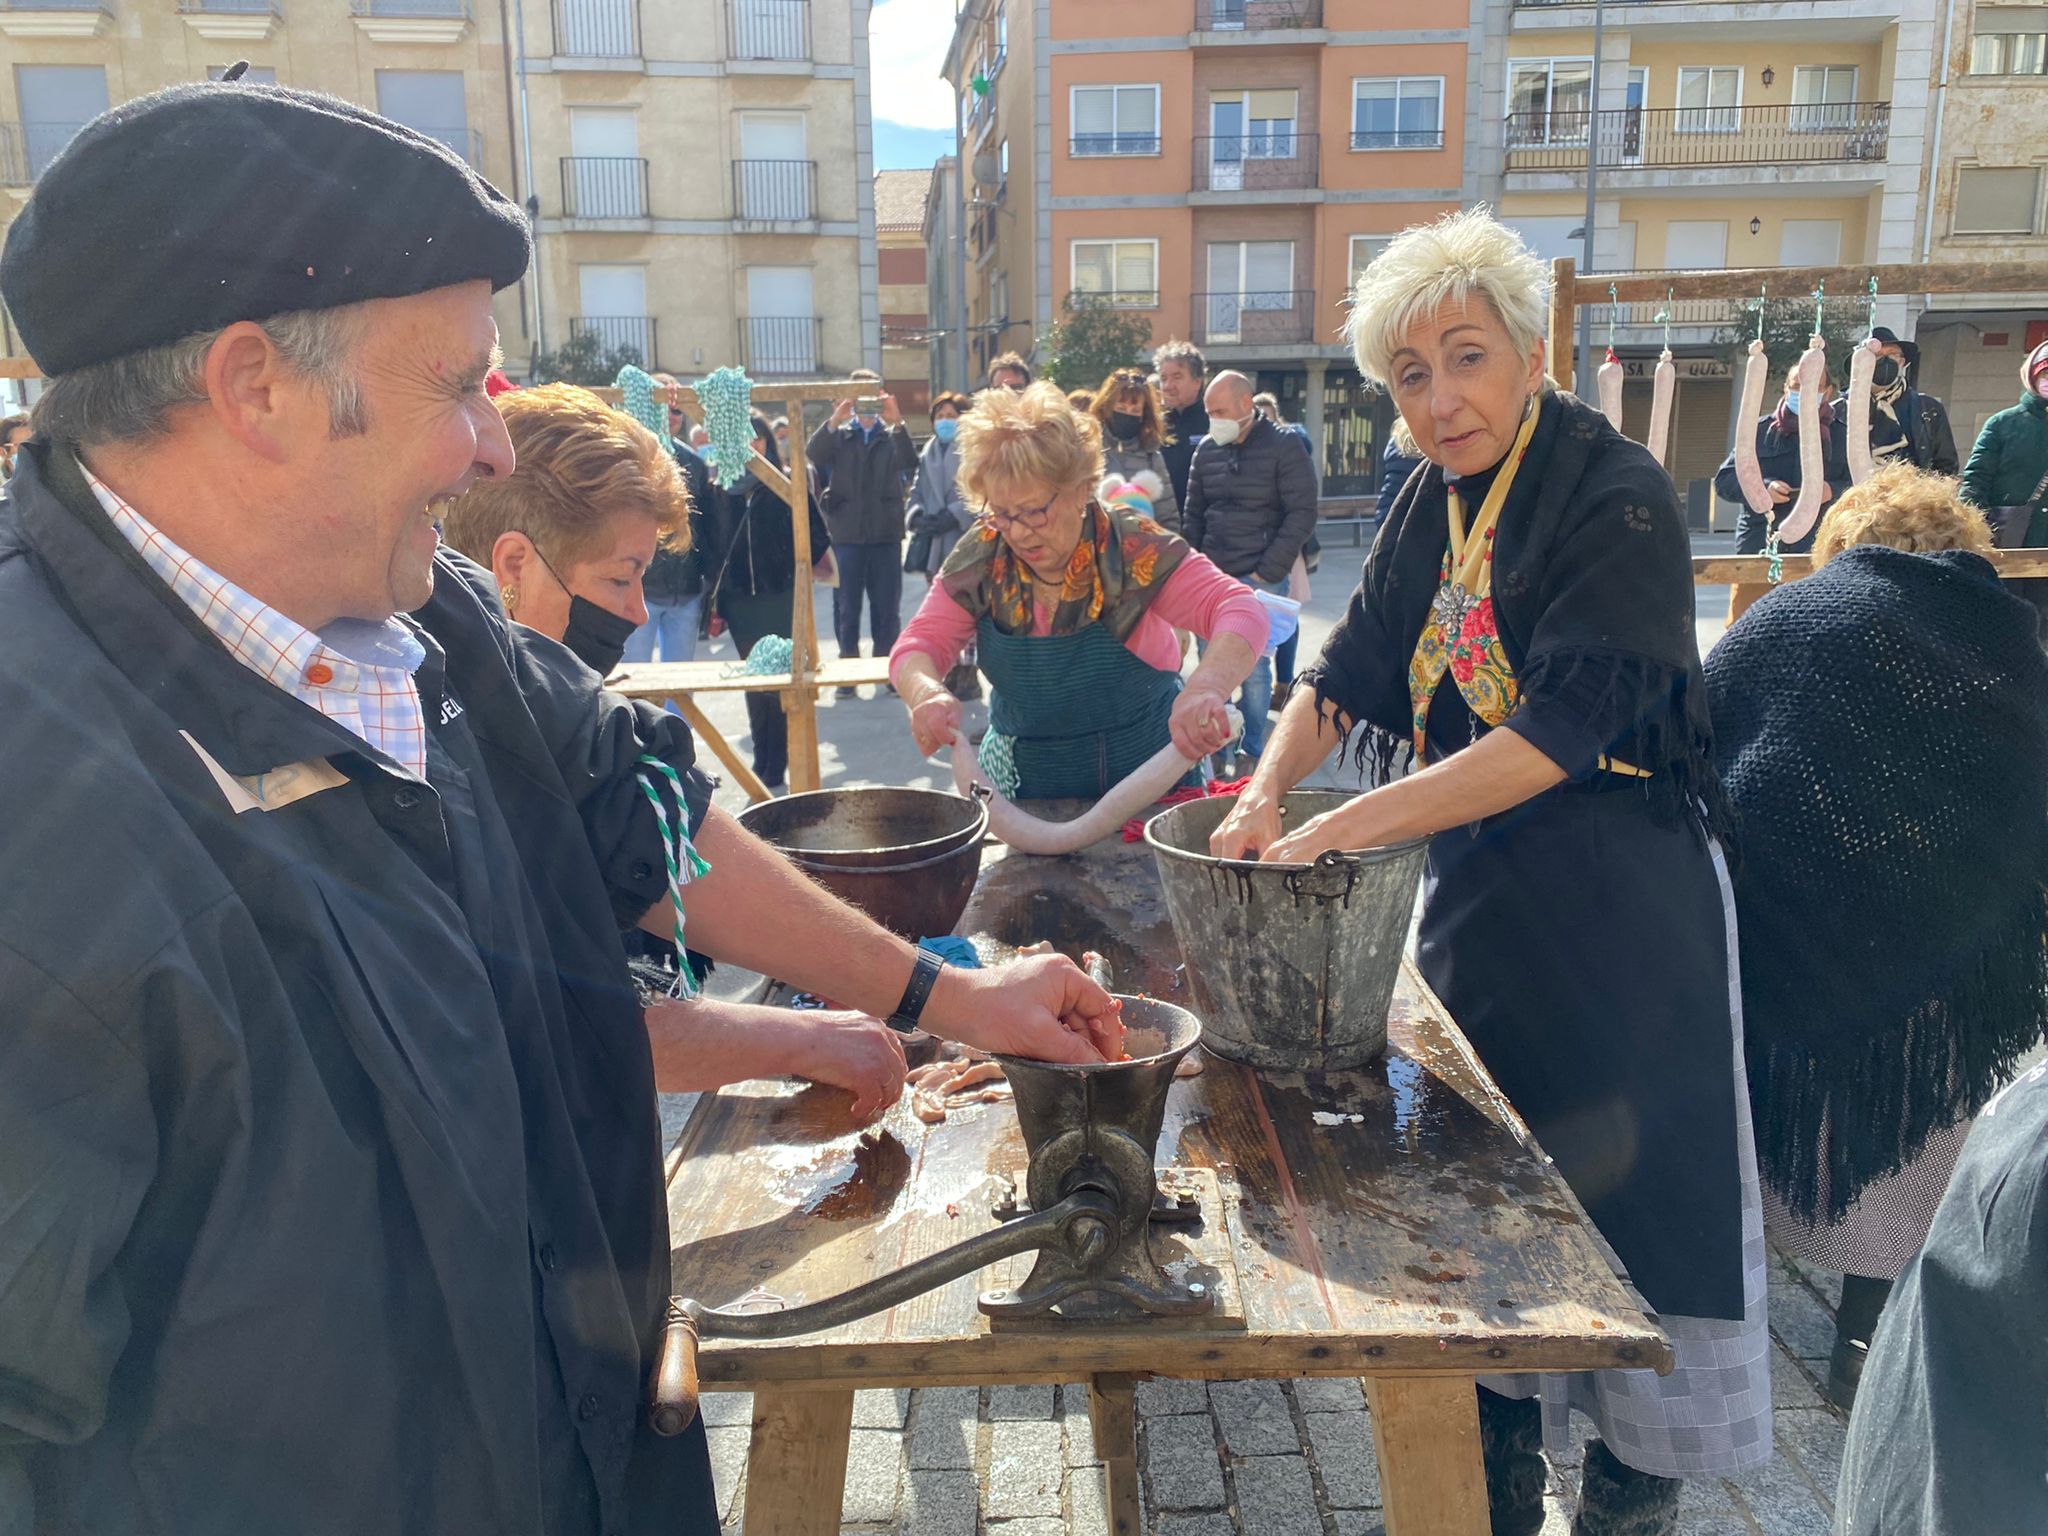 Fiesta del mondongo en Guijuelo | Salamanca 24 Horas